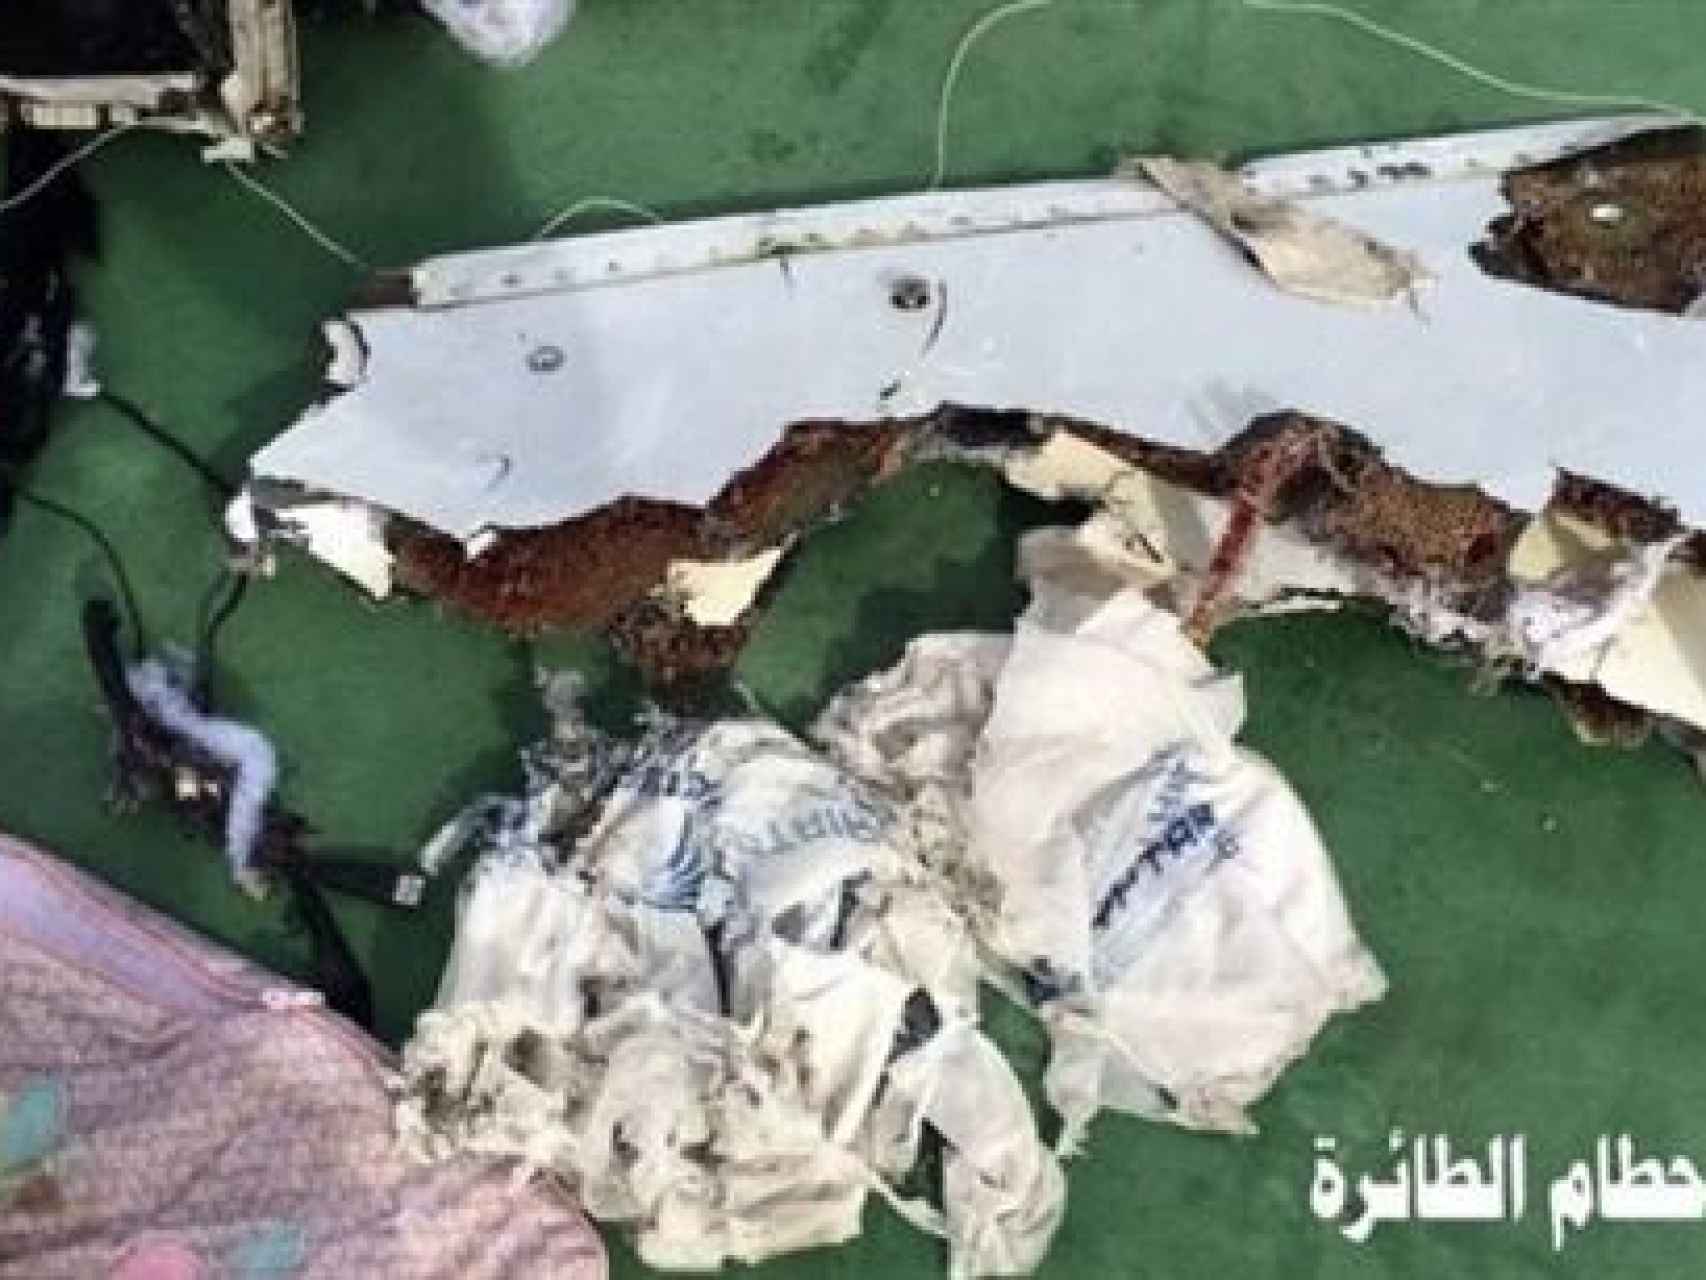 Los restos hallados del vuelo de EgyptAir